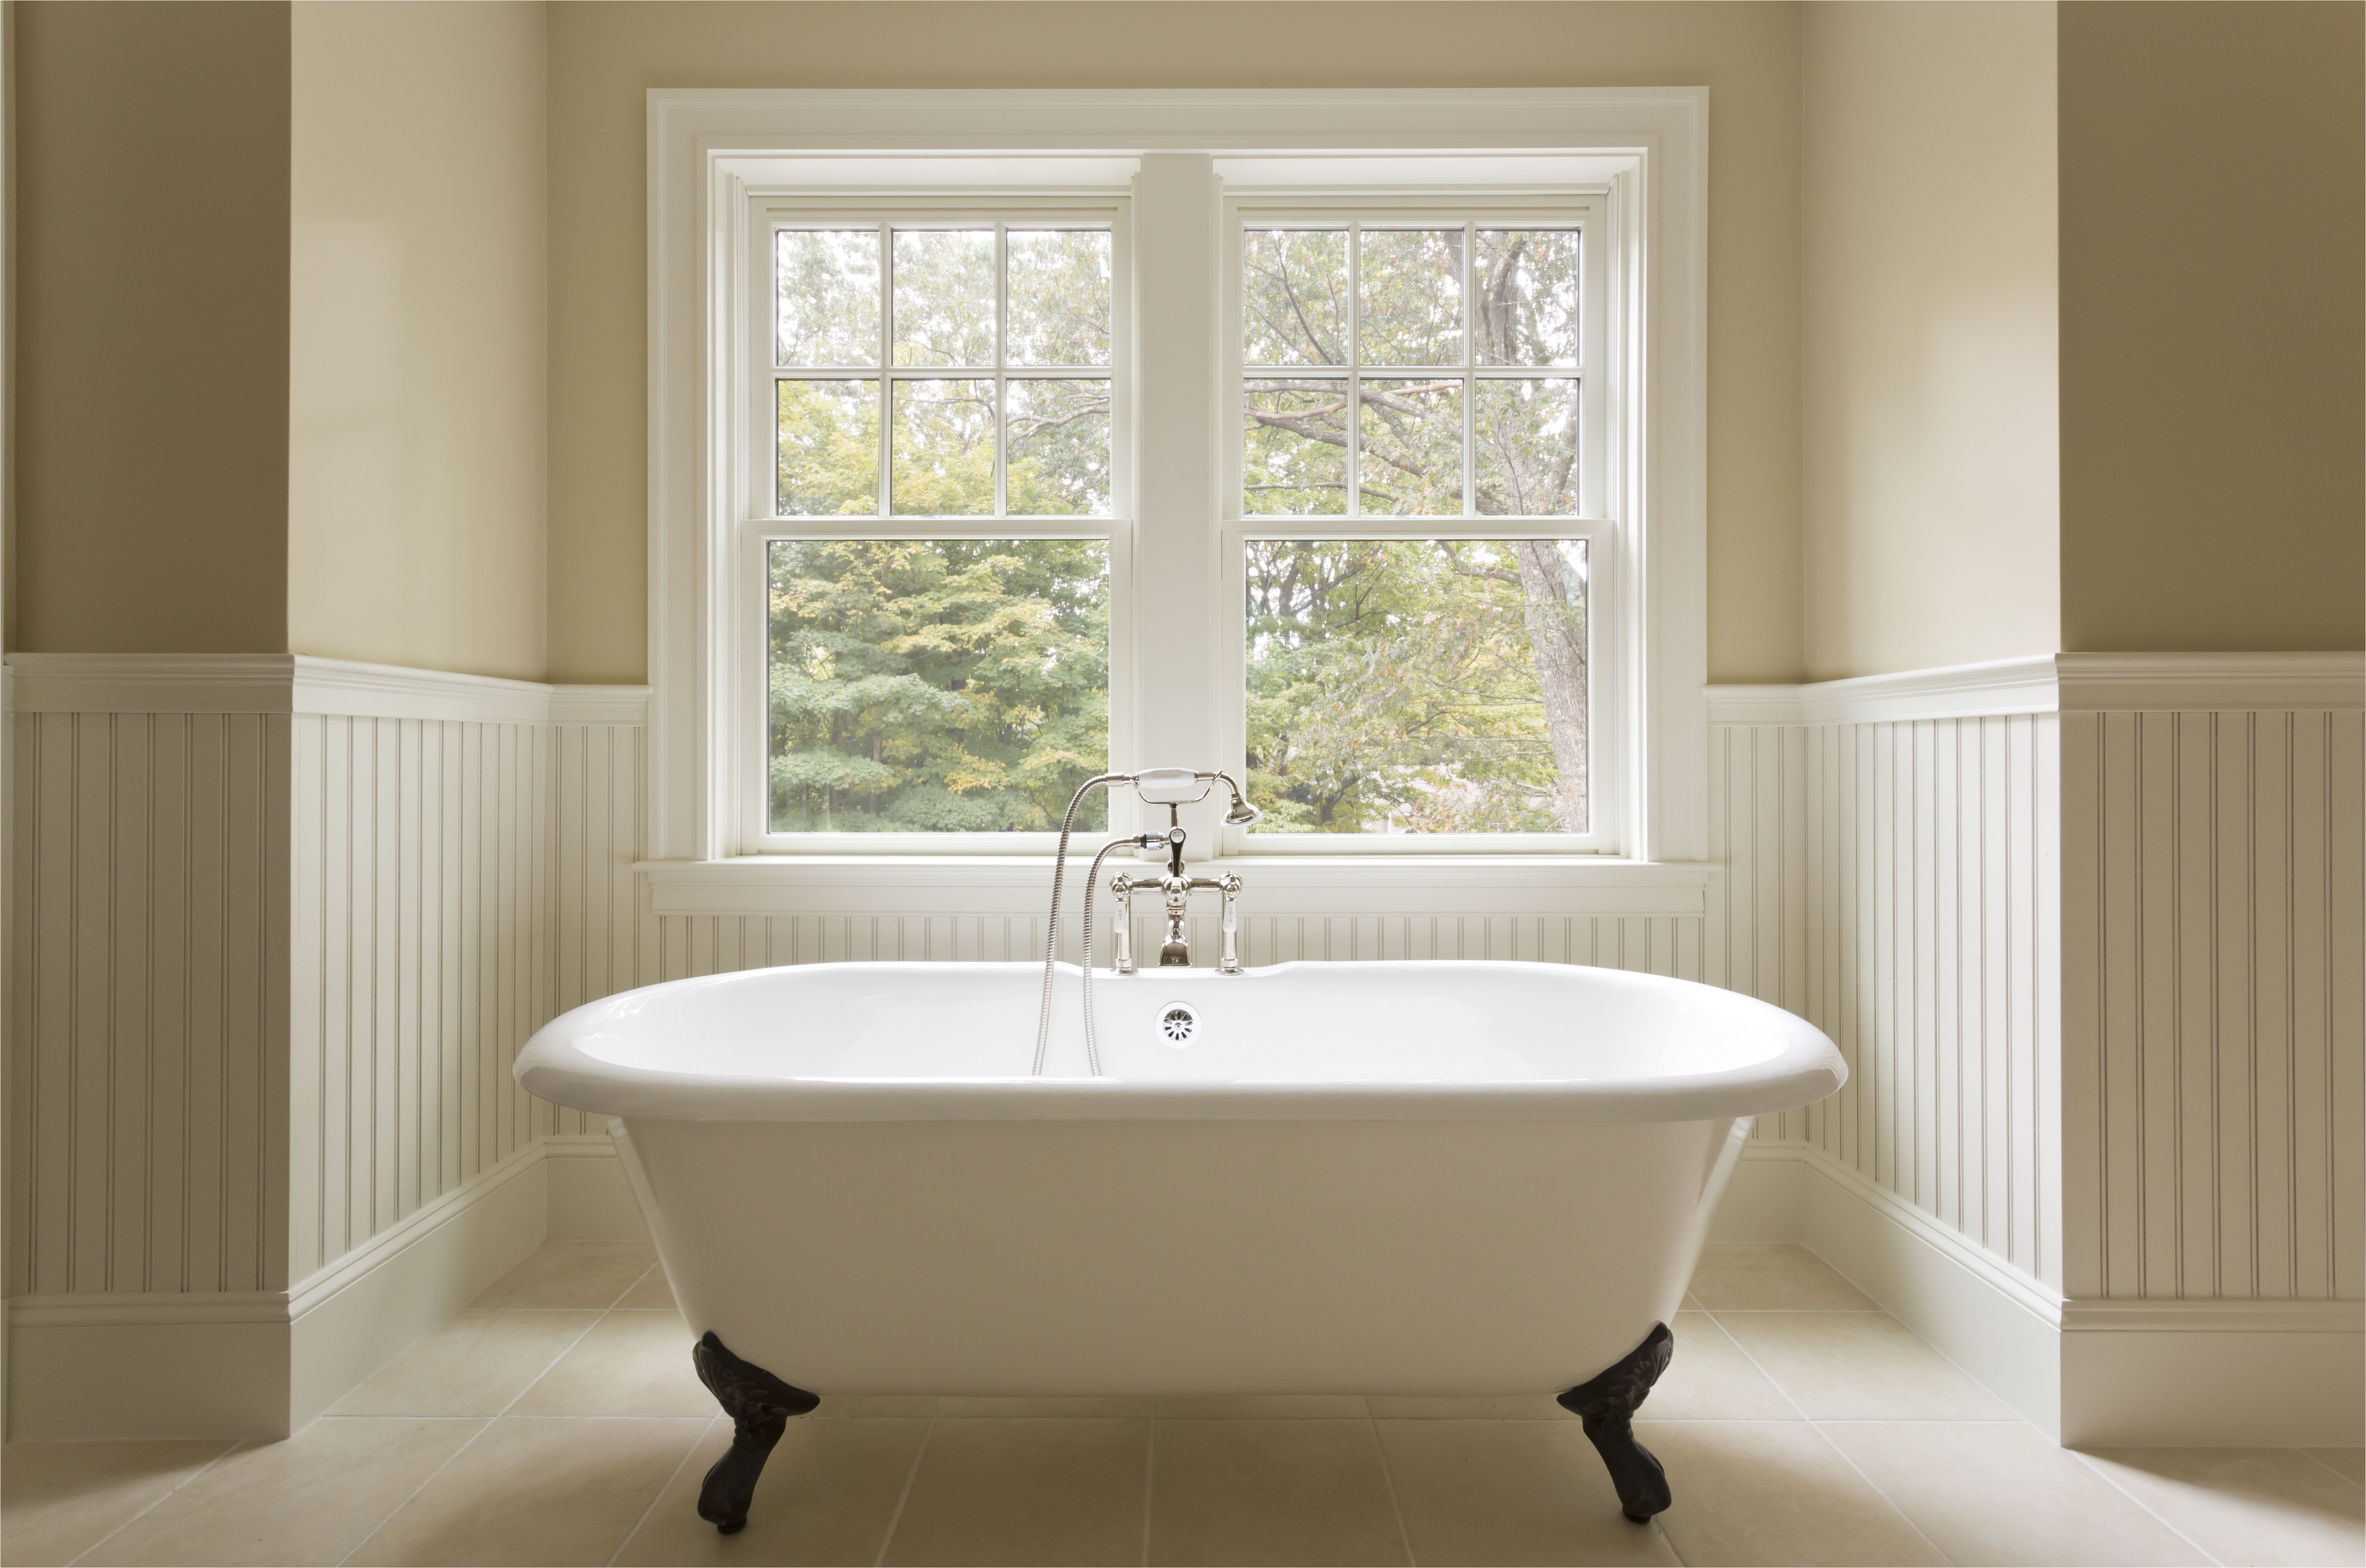 clawfoot bathtub in custom designed bathroom 170130028 5810e0353df78c2c73fb1b70